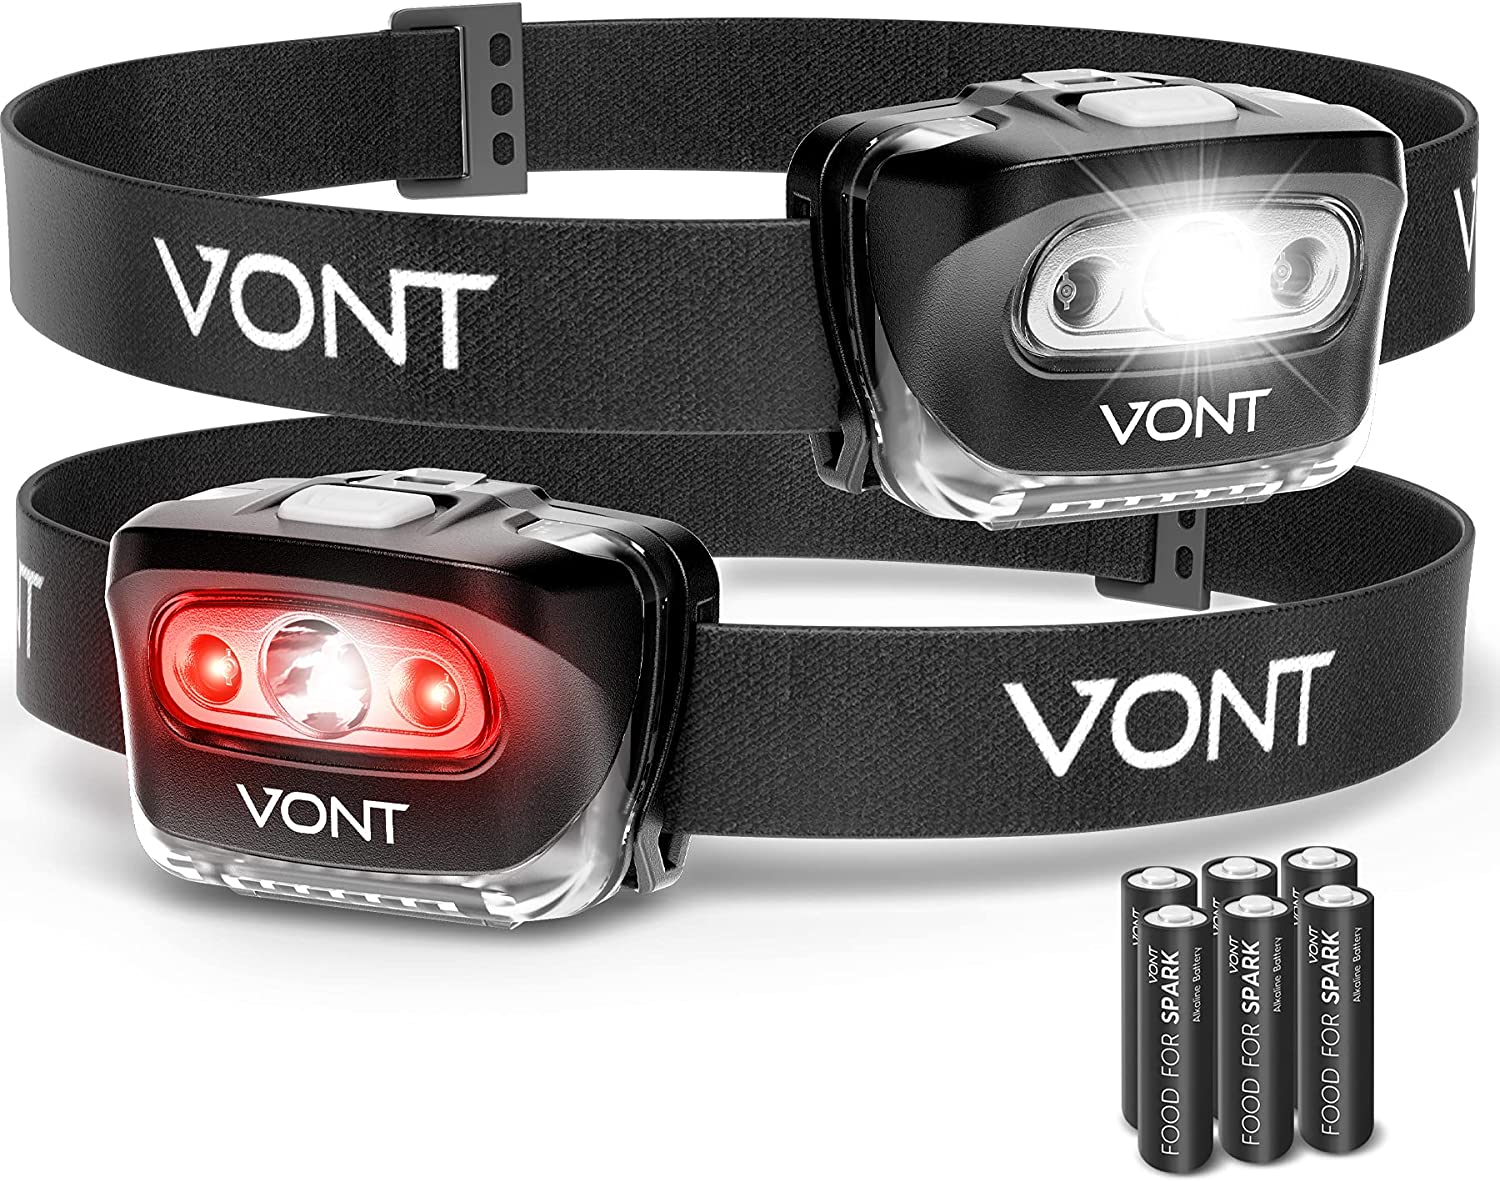 【美國代購】Vont「Spark」LED 頭燈手電筒 （2 件裝）超亮頭燈裝備 適合跑步、露營、健行、登山、釣魚、狩獵、慢跑、具有紅燈的頭燈 - 成人、兒童使用